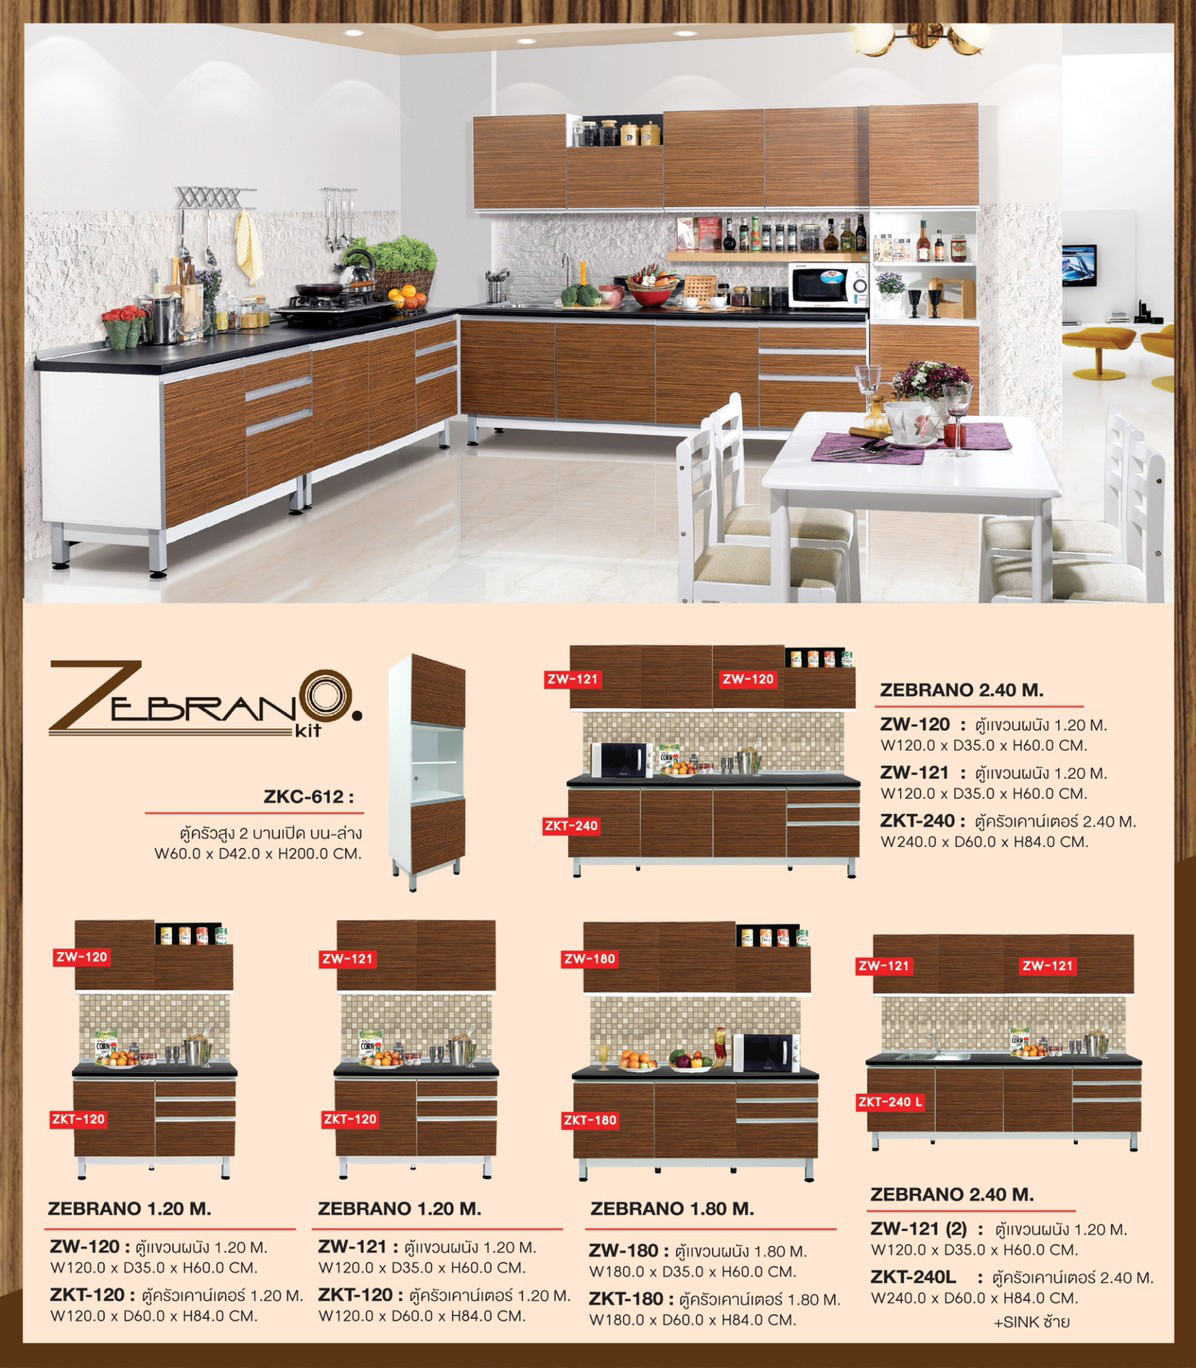 45018::ZKT-120::A Sure counter kitchen. Dimension (WxDxH) cm : 120x60x84 Kitchen Sets